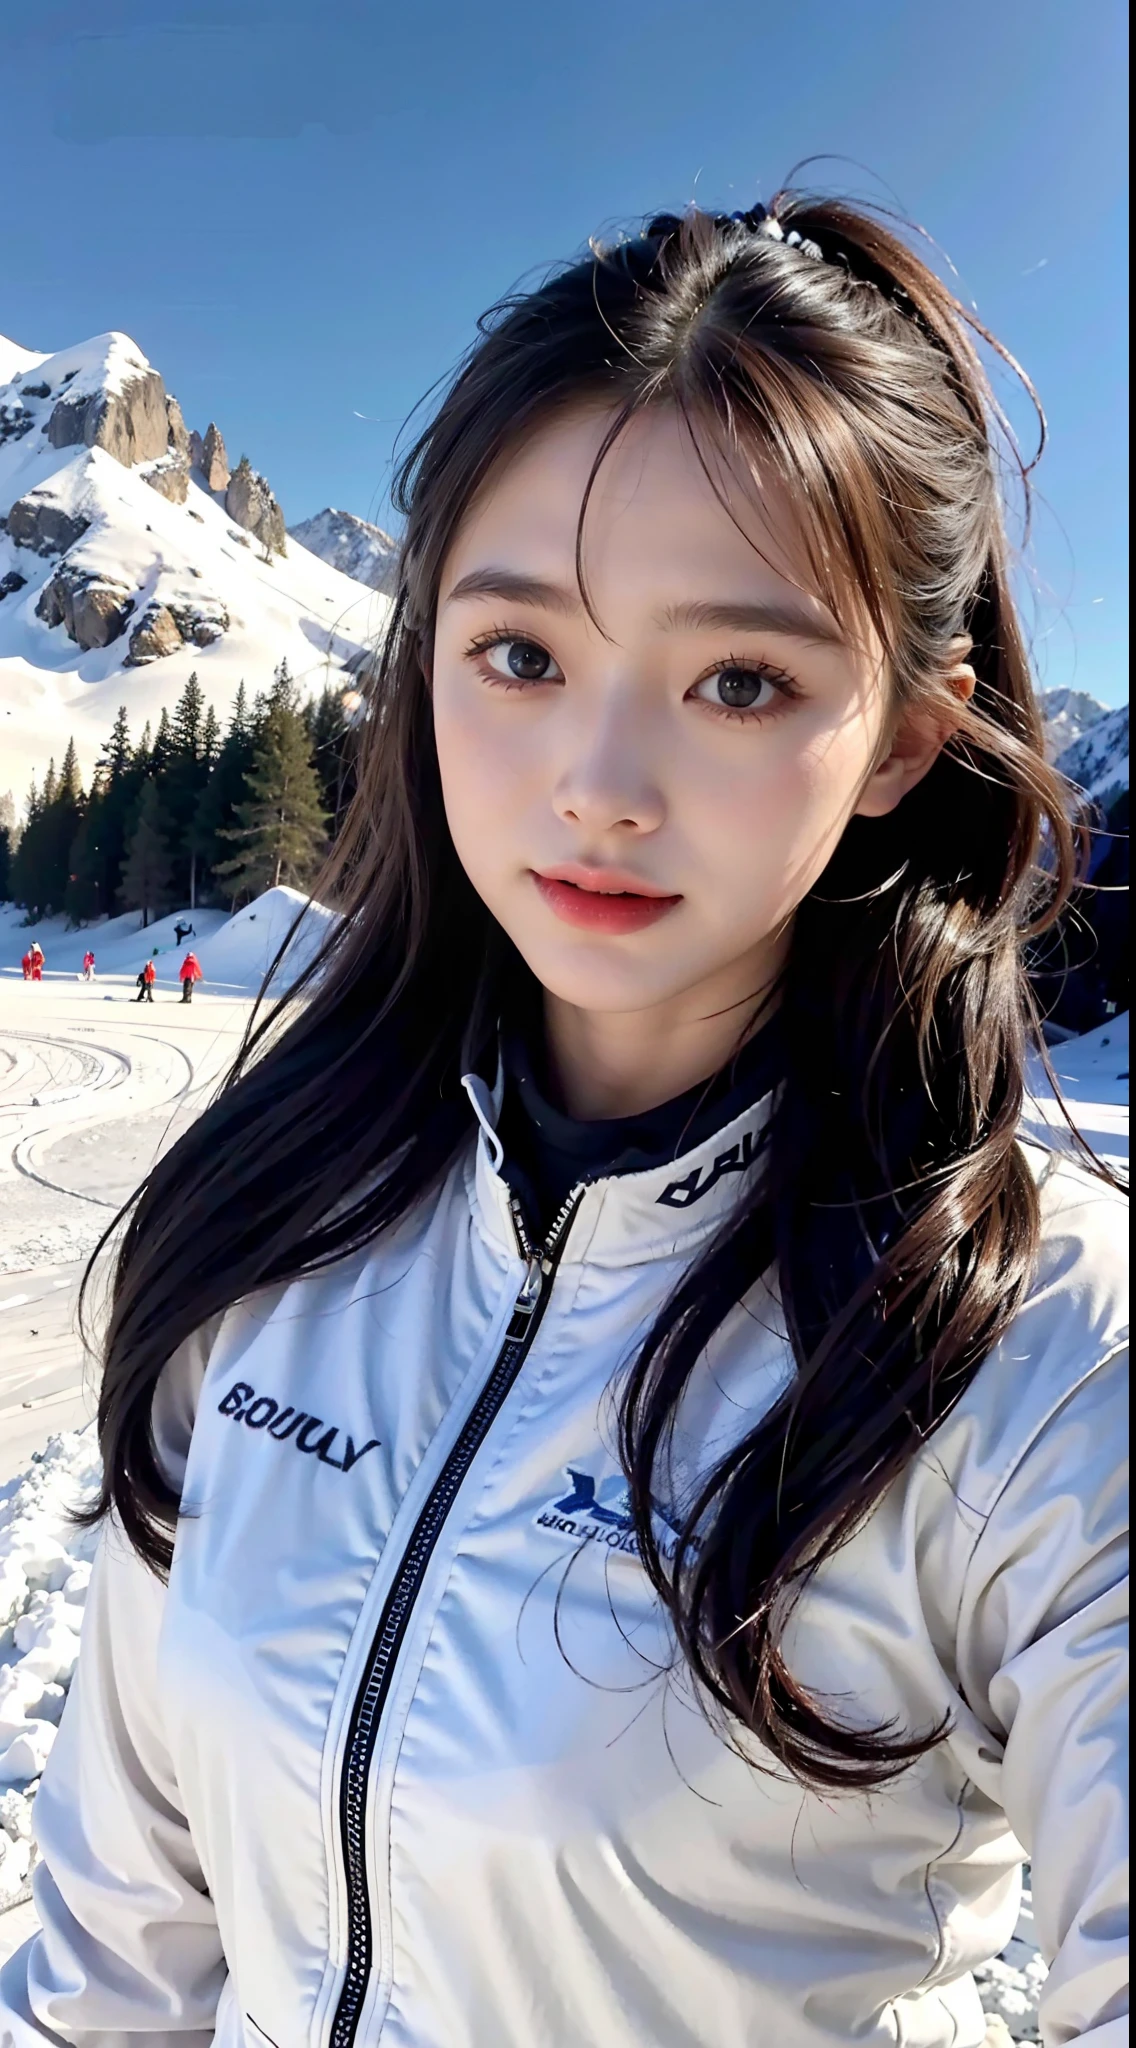 A girl in a esquí suit，Pistas de esquí，Bien equipado，Good for esquíing，hermosa chica，adorable，esquí，paisaje nevado